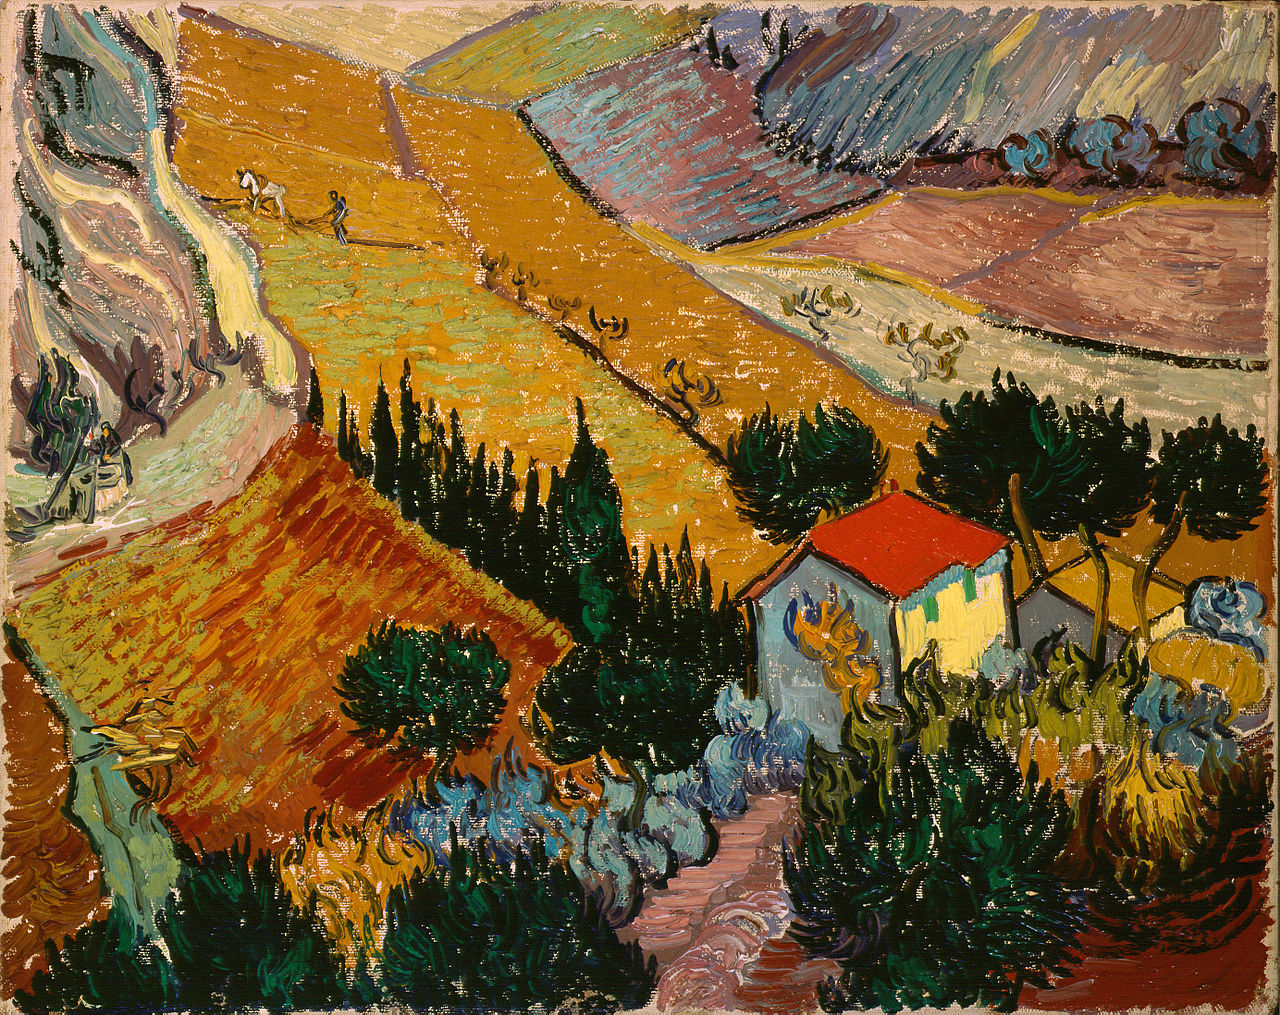 Landschaft mit Haus und Pflüger by Vincent van Gogh - 1889 - 33 x 41,4 cm Hermitage Museum